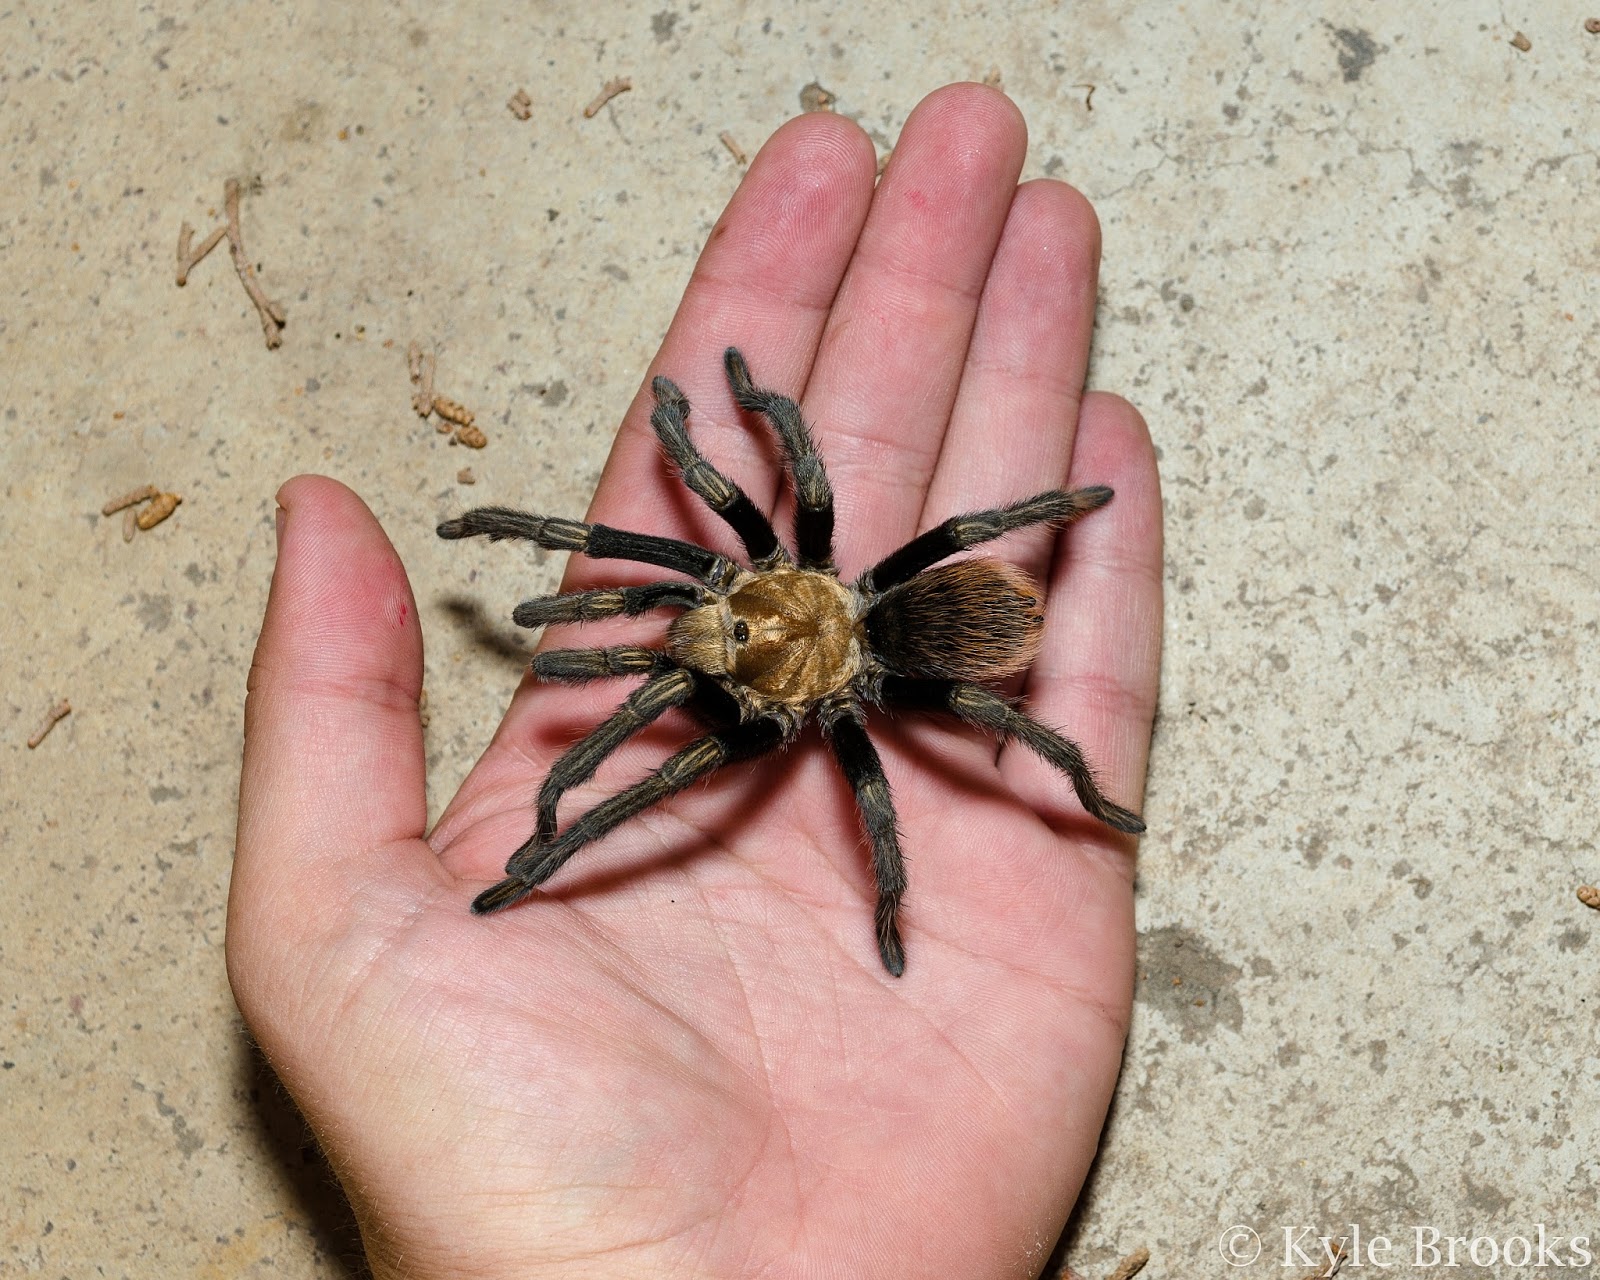 Holding a tarantula